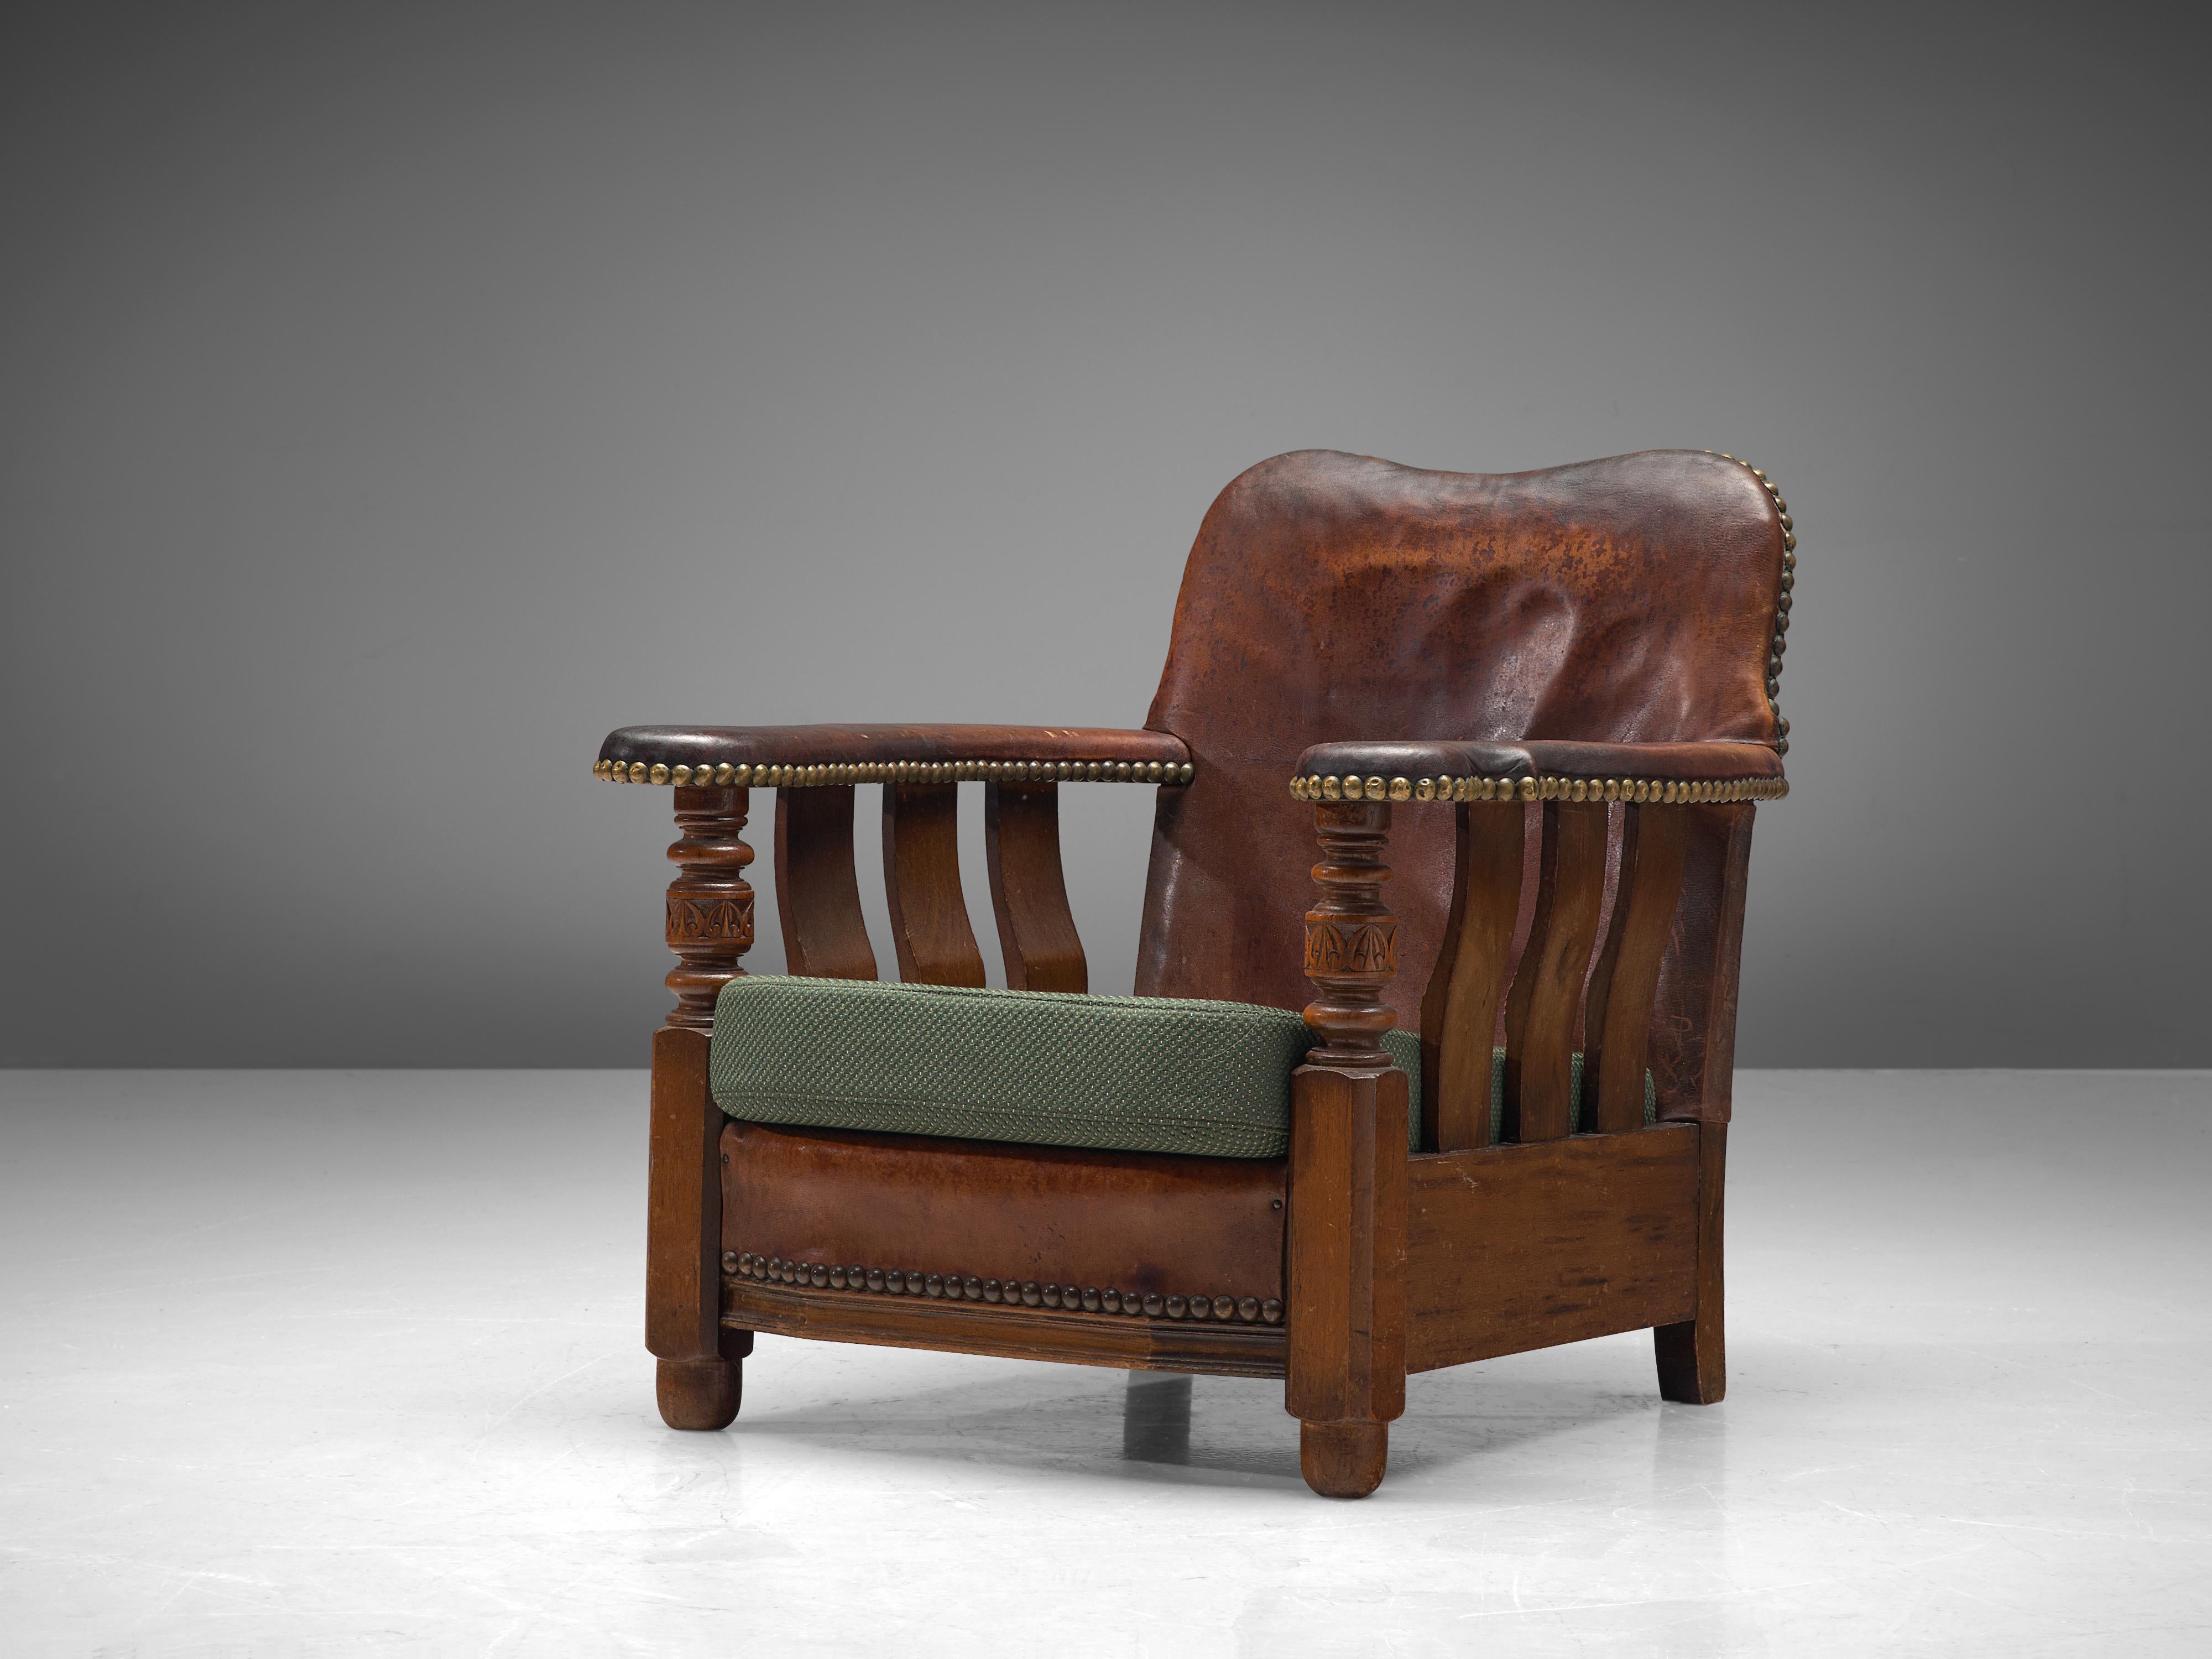 Sessel, gebeizte Esche, Leder, Stoff, Dänemark, 1920er Jahre.

Ein außergewöhnliches Beispiel für das frühe dänische Design, dieser Loungesessel mit robuster, sperriger Ästhetik. Das Gestell des Stuhls ist aus gebeiztem Eschenholz gefertigt. Die